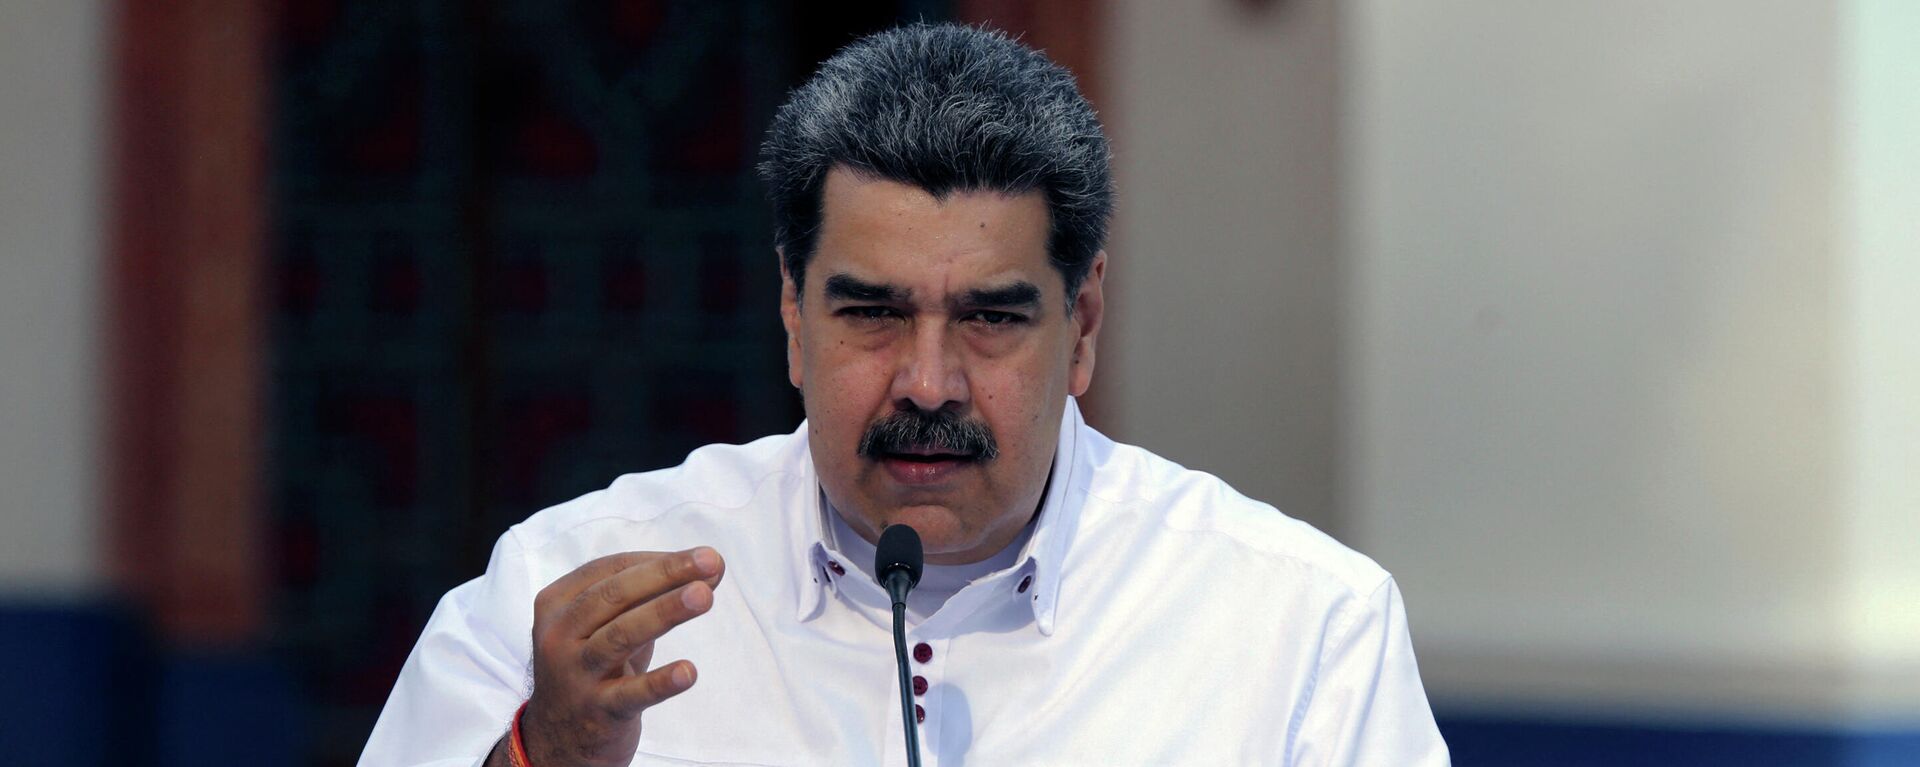 Nicolás Maduro, presidente de Venezuela - Sputnik Mundo, 1920, 21.04.2021